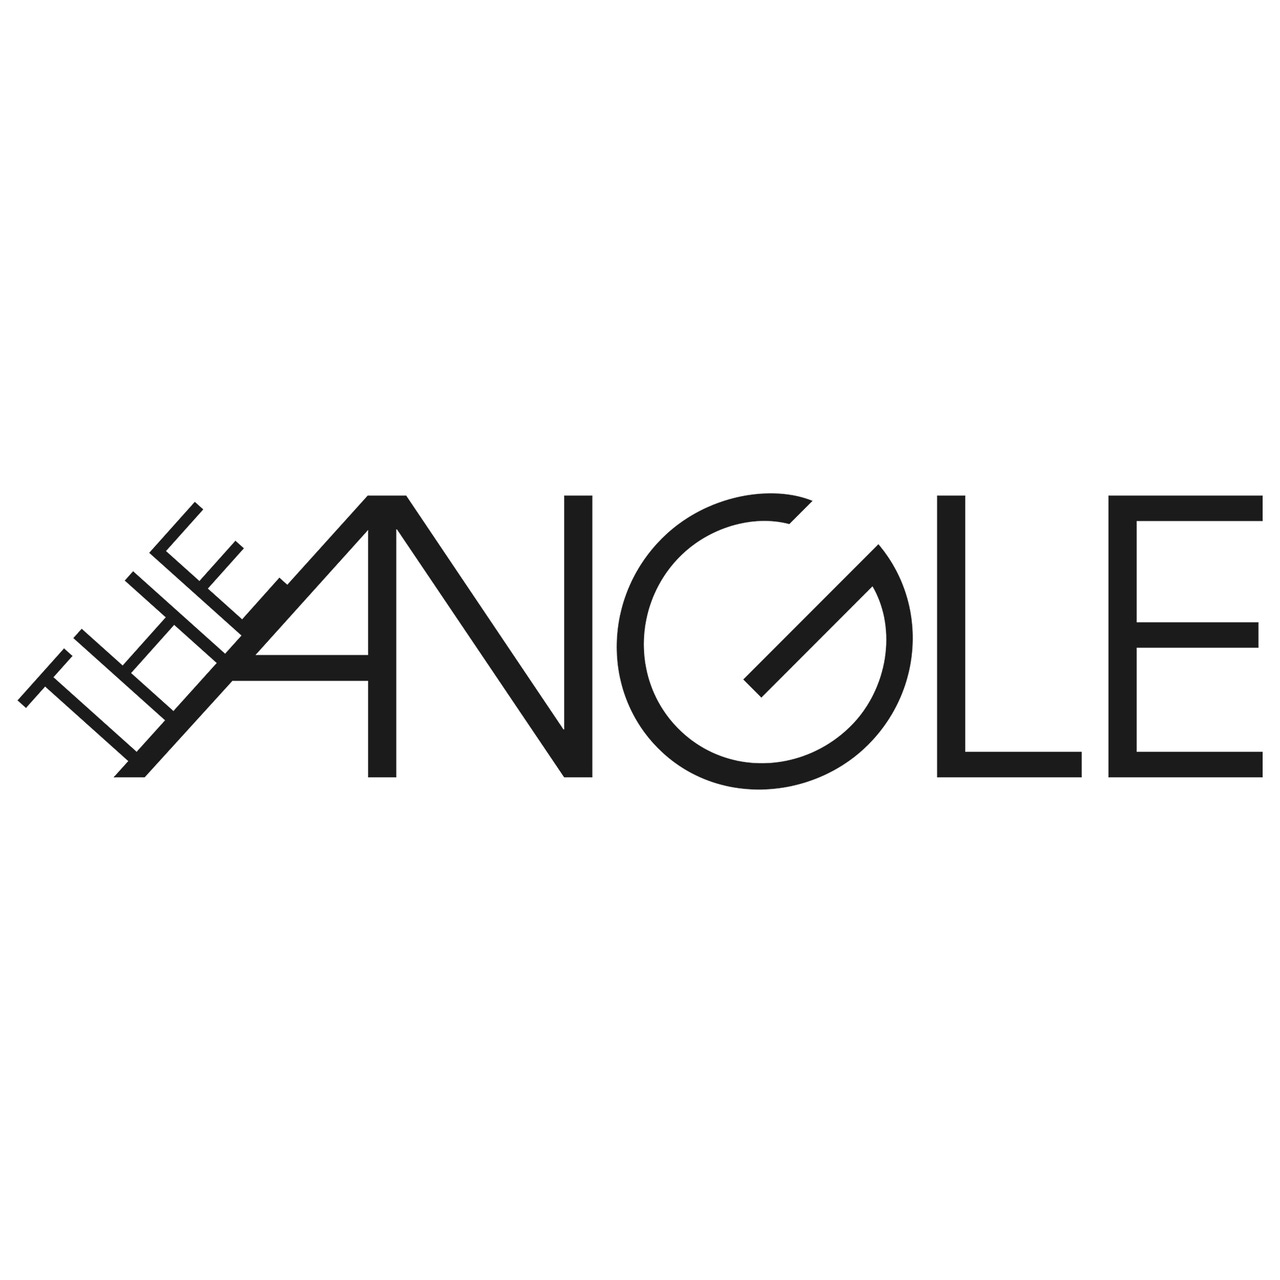 The Angle